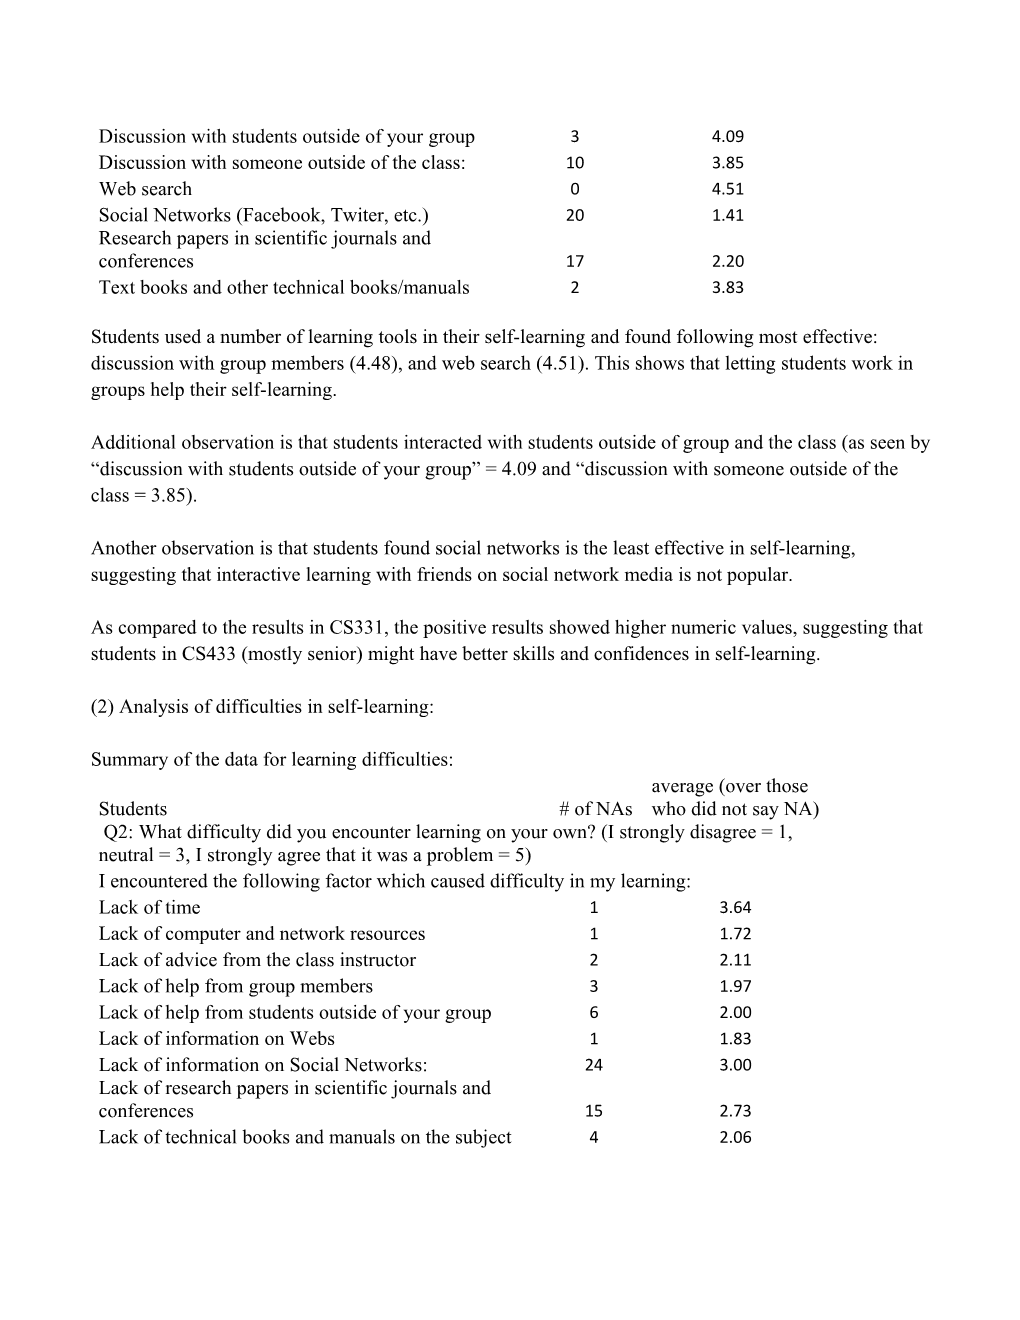 CS 433 Self-Learning Assessment (Spring 2012)